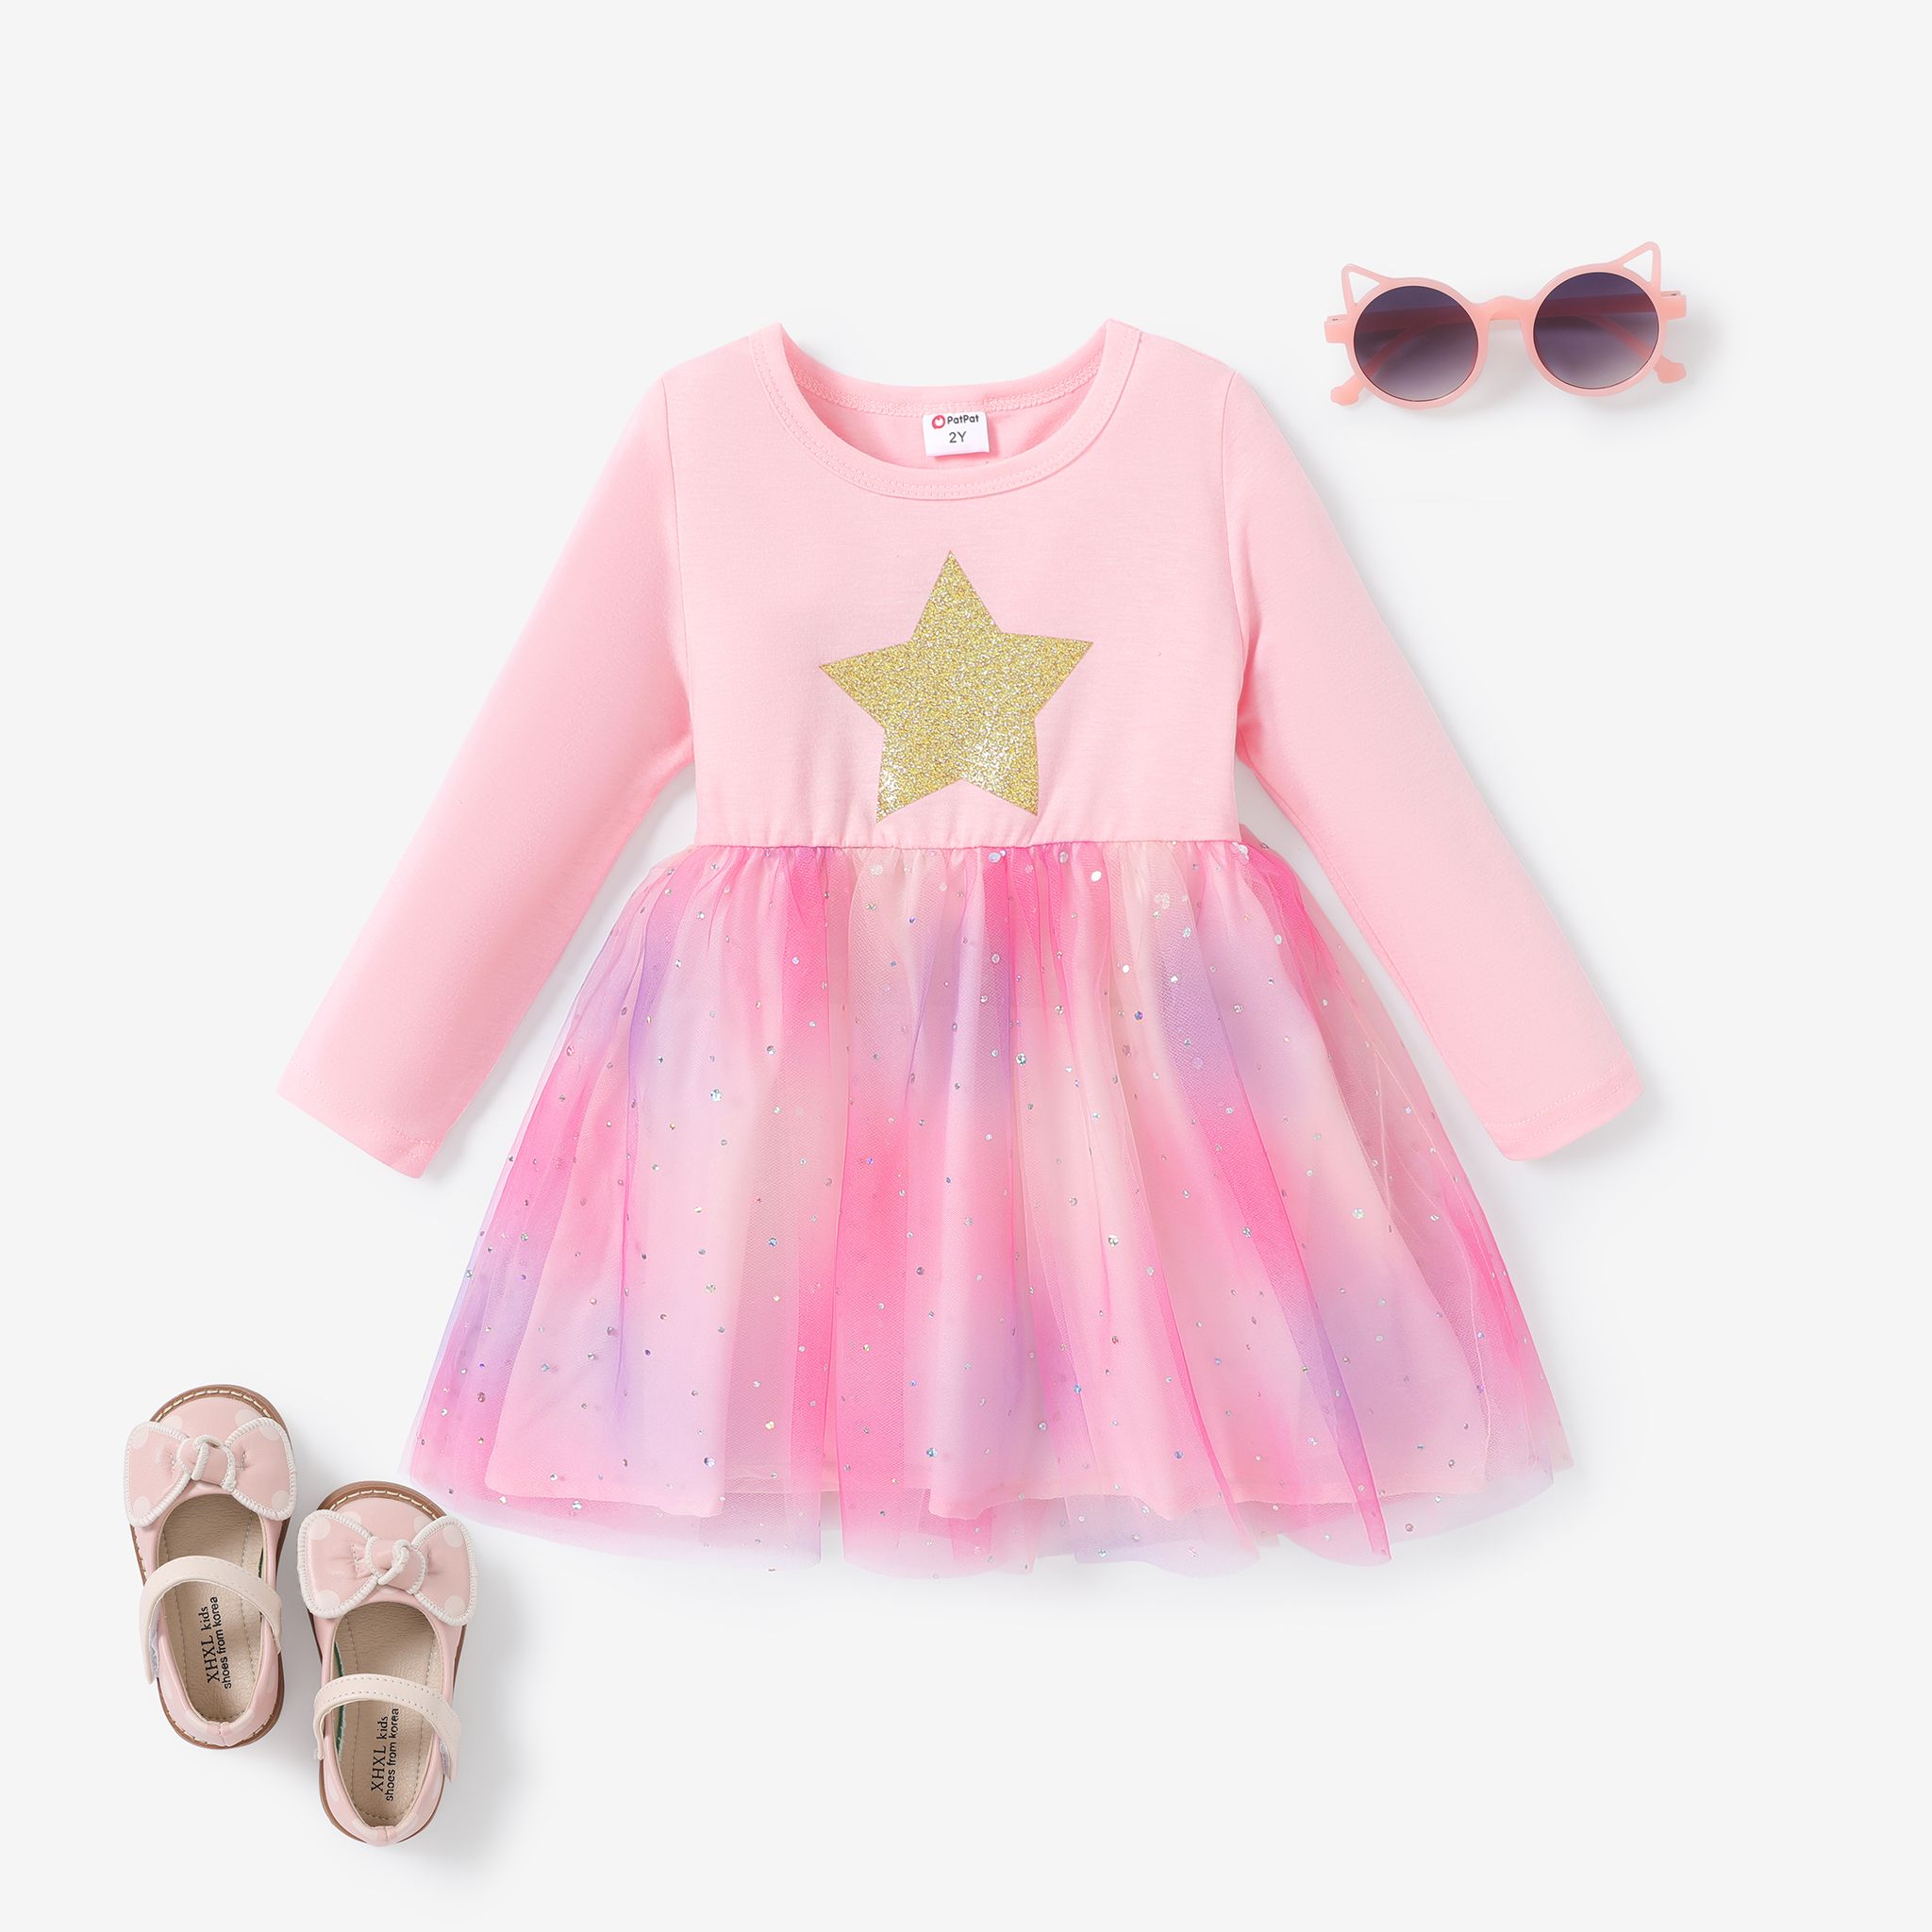 Sweet Toddler Girl Robe En Maille - Multi-couches Imprimé étoiles/lune/nuages - Manches Longues - Lot De 1